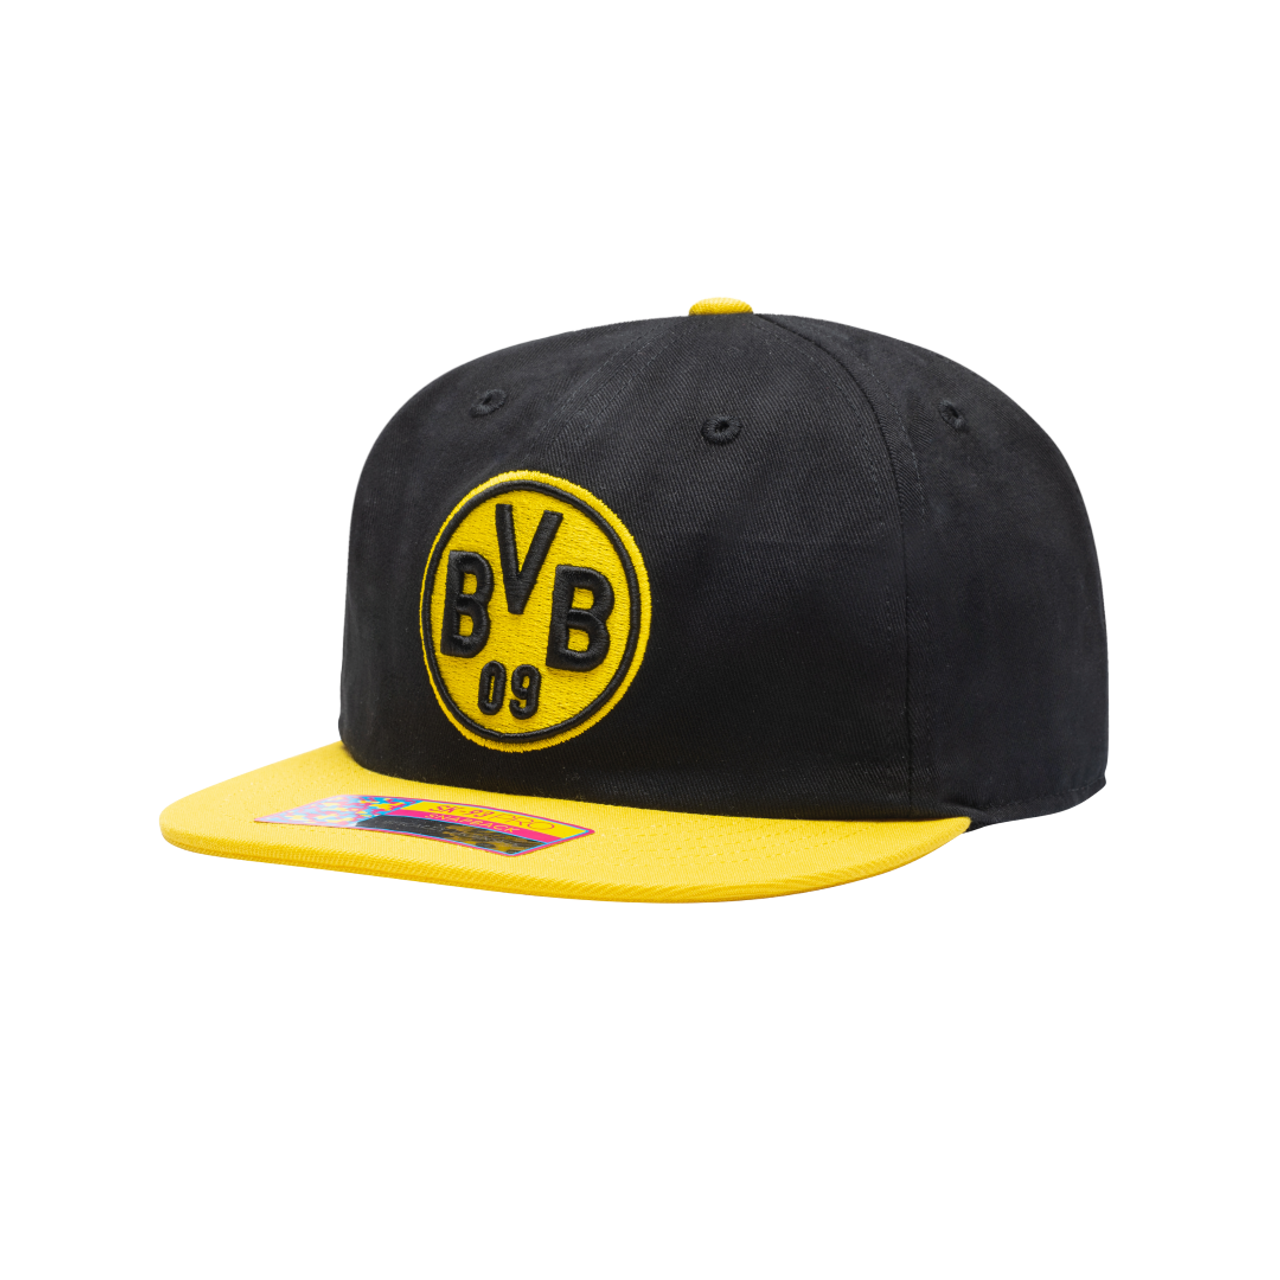 Borussia Dortmund 'Swingman' Adjustable Soccer hat by Fan Ink LTD